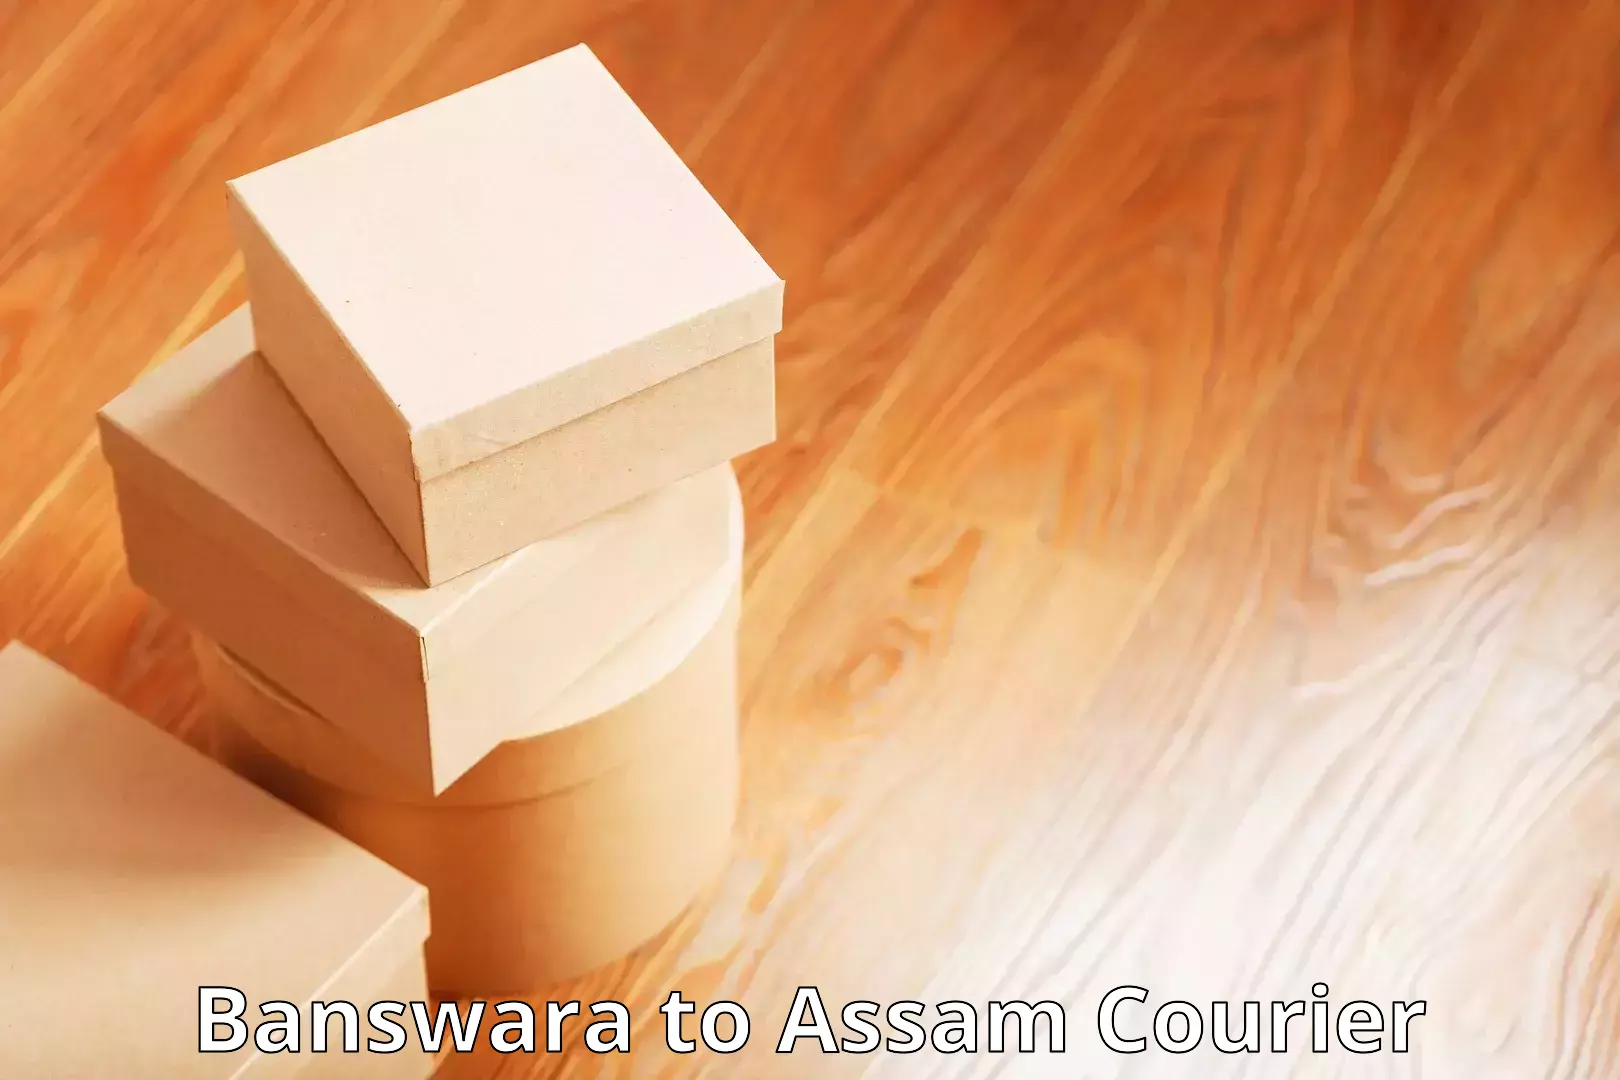 Efficient cargo services Banswara to Assam